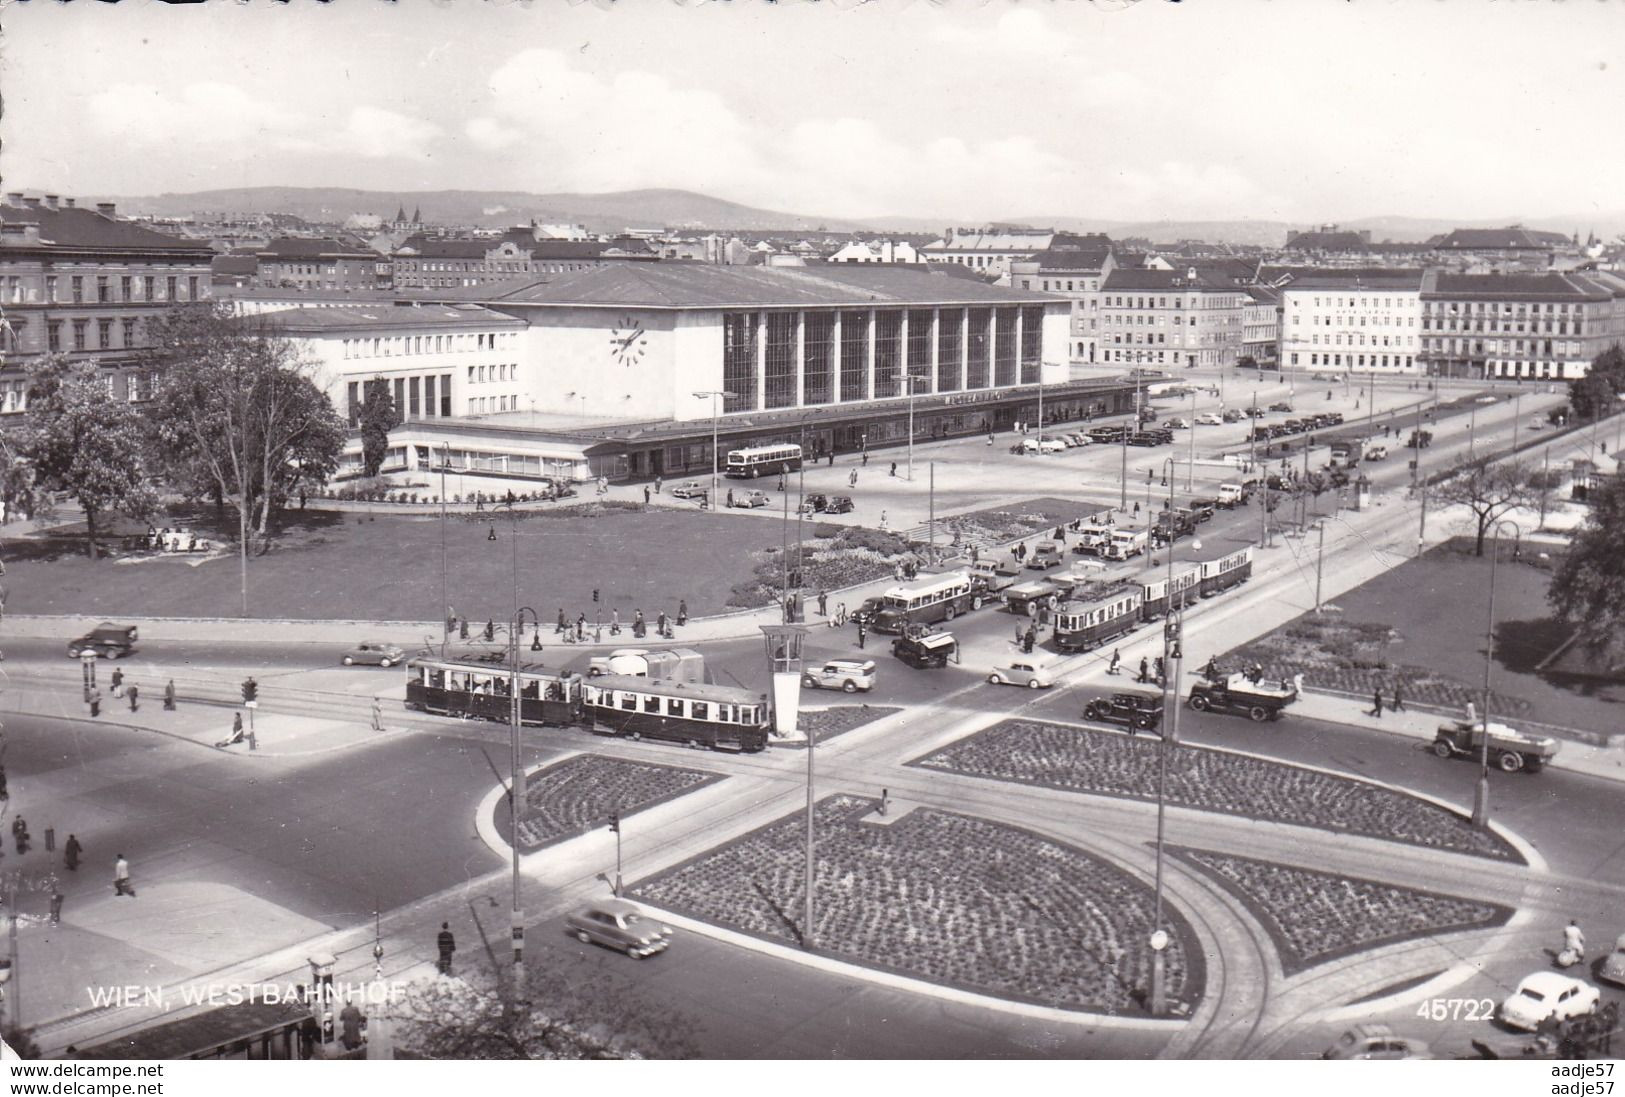 Austria Oostenrijk Wien Westbahnhof 1958 - Strassenbahnen